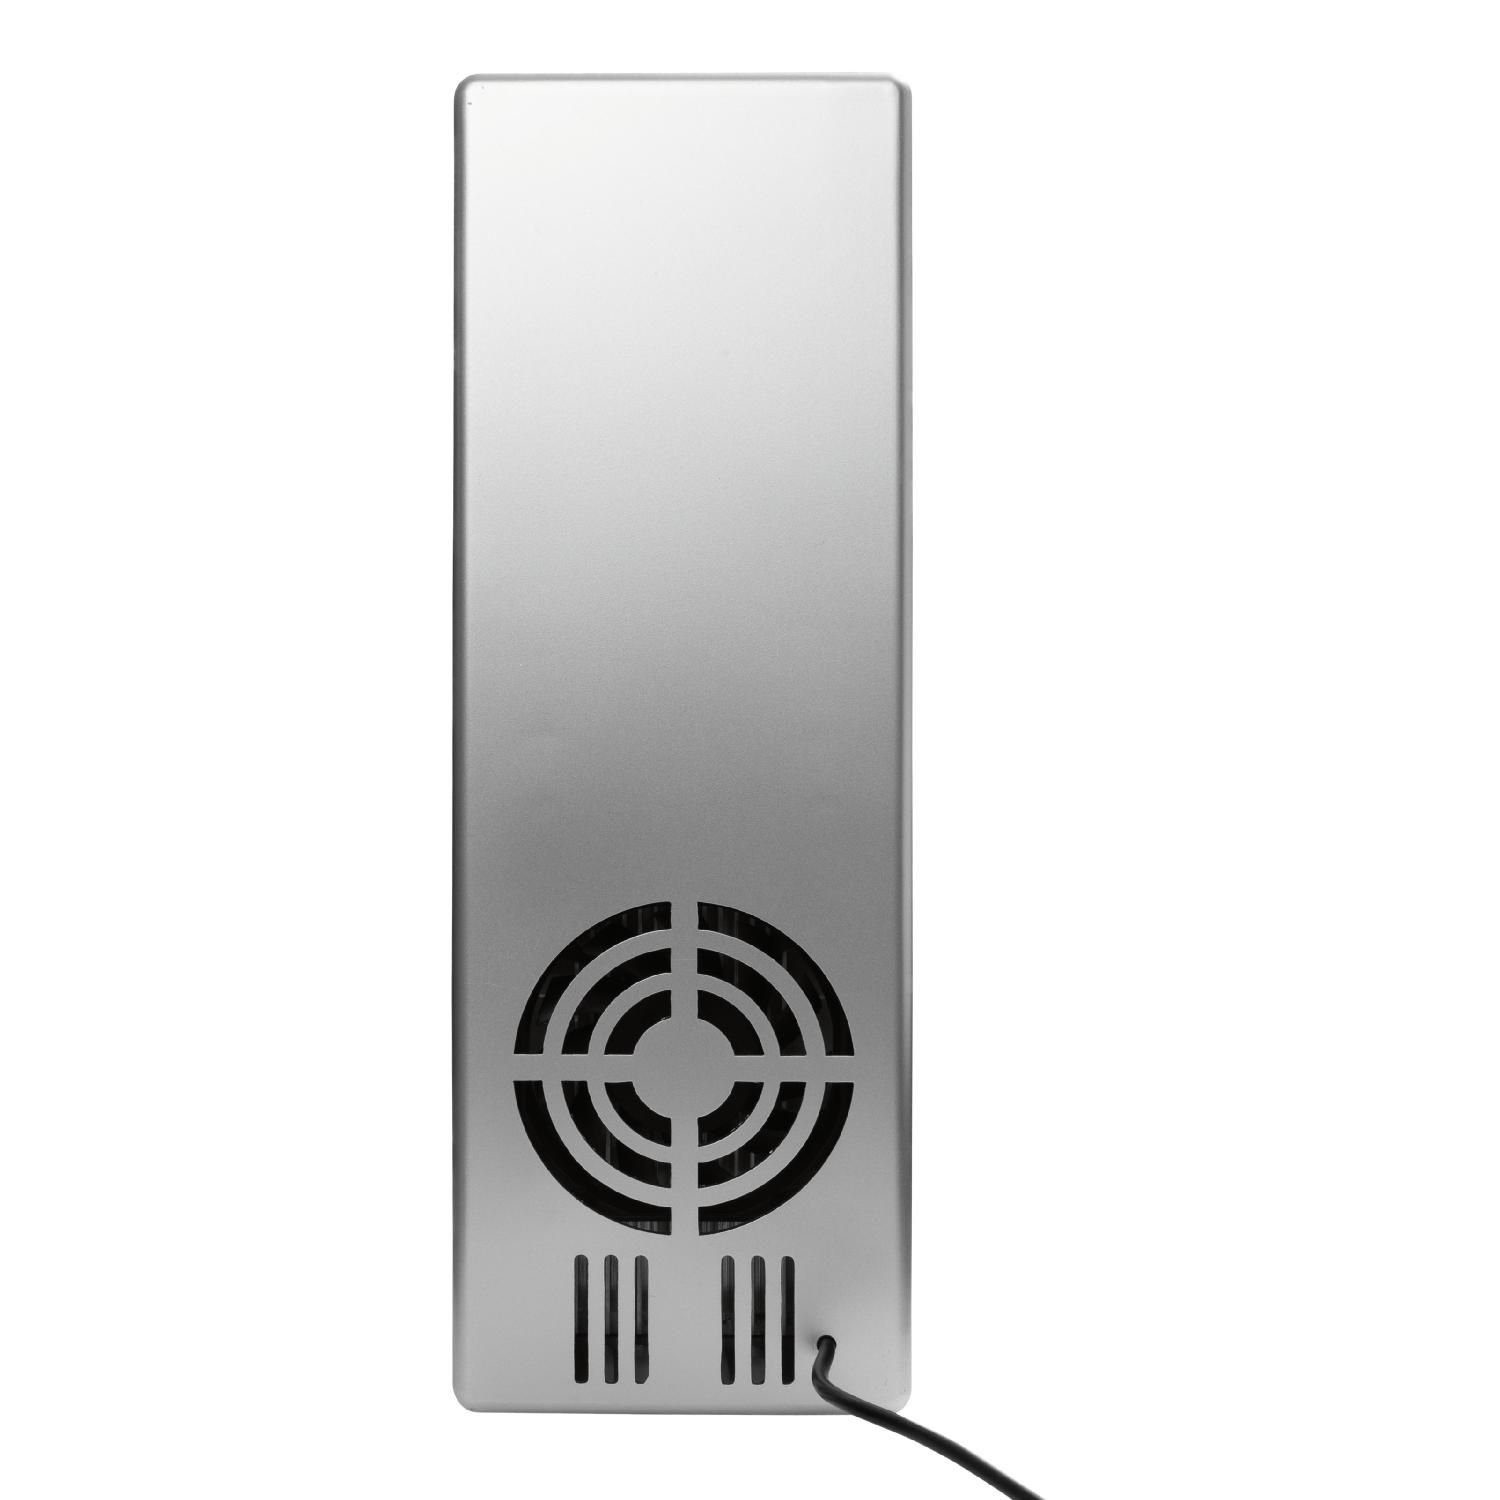 Jahre Fridge GadgetMonster 4-10Â° 5 Herstellergarantie inkl. Intelligenter Smart Kabel C, Kühlschrank Küchenmaschine USB